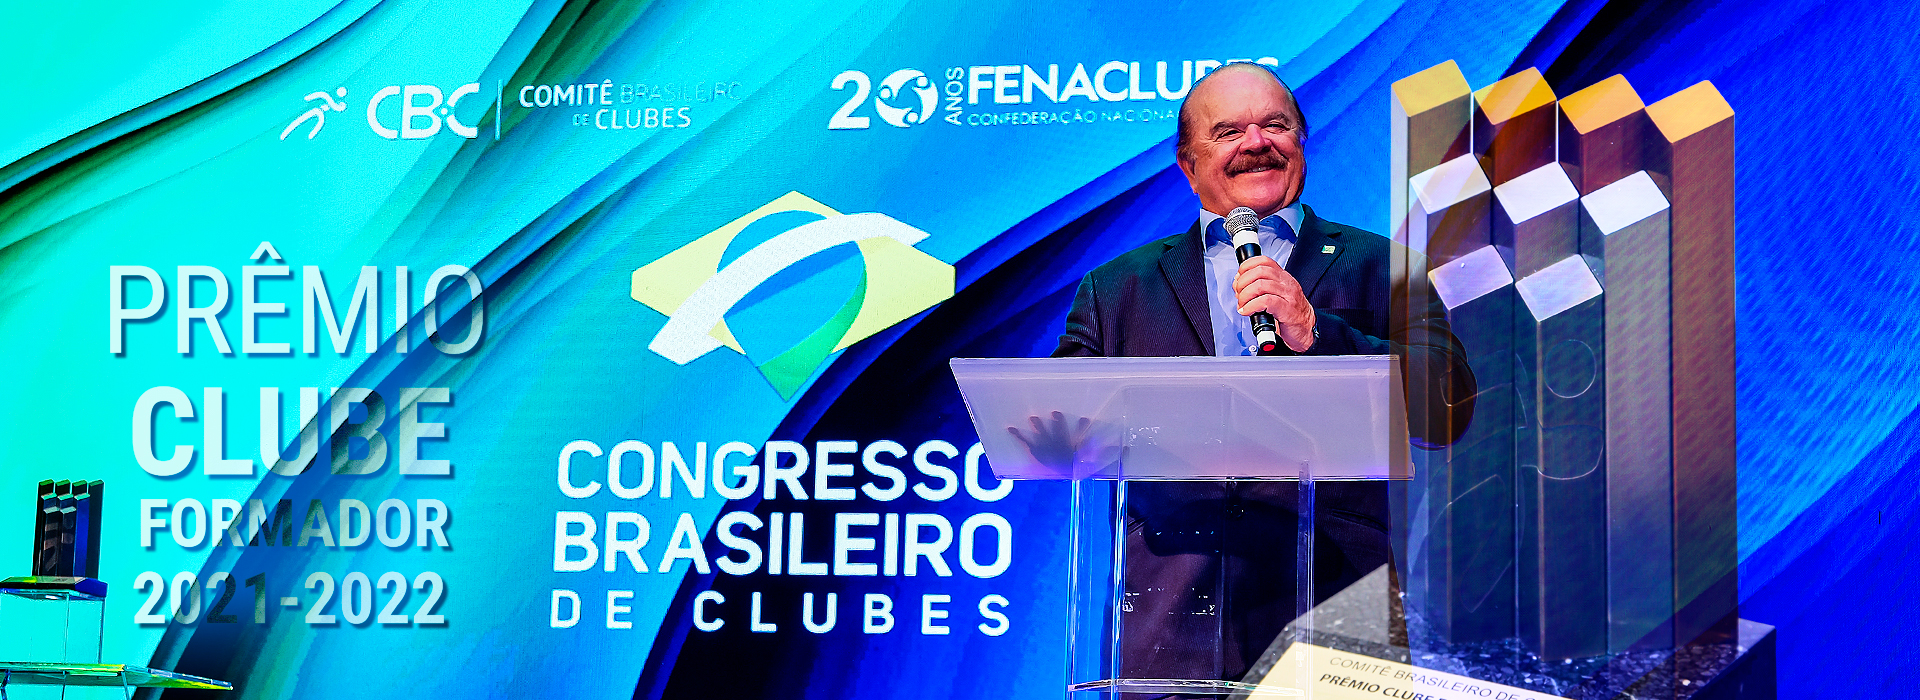 Muita emoção na apresentação dos vídeos do Prêmio Clube Formador 2021-2022  